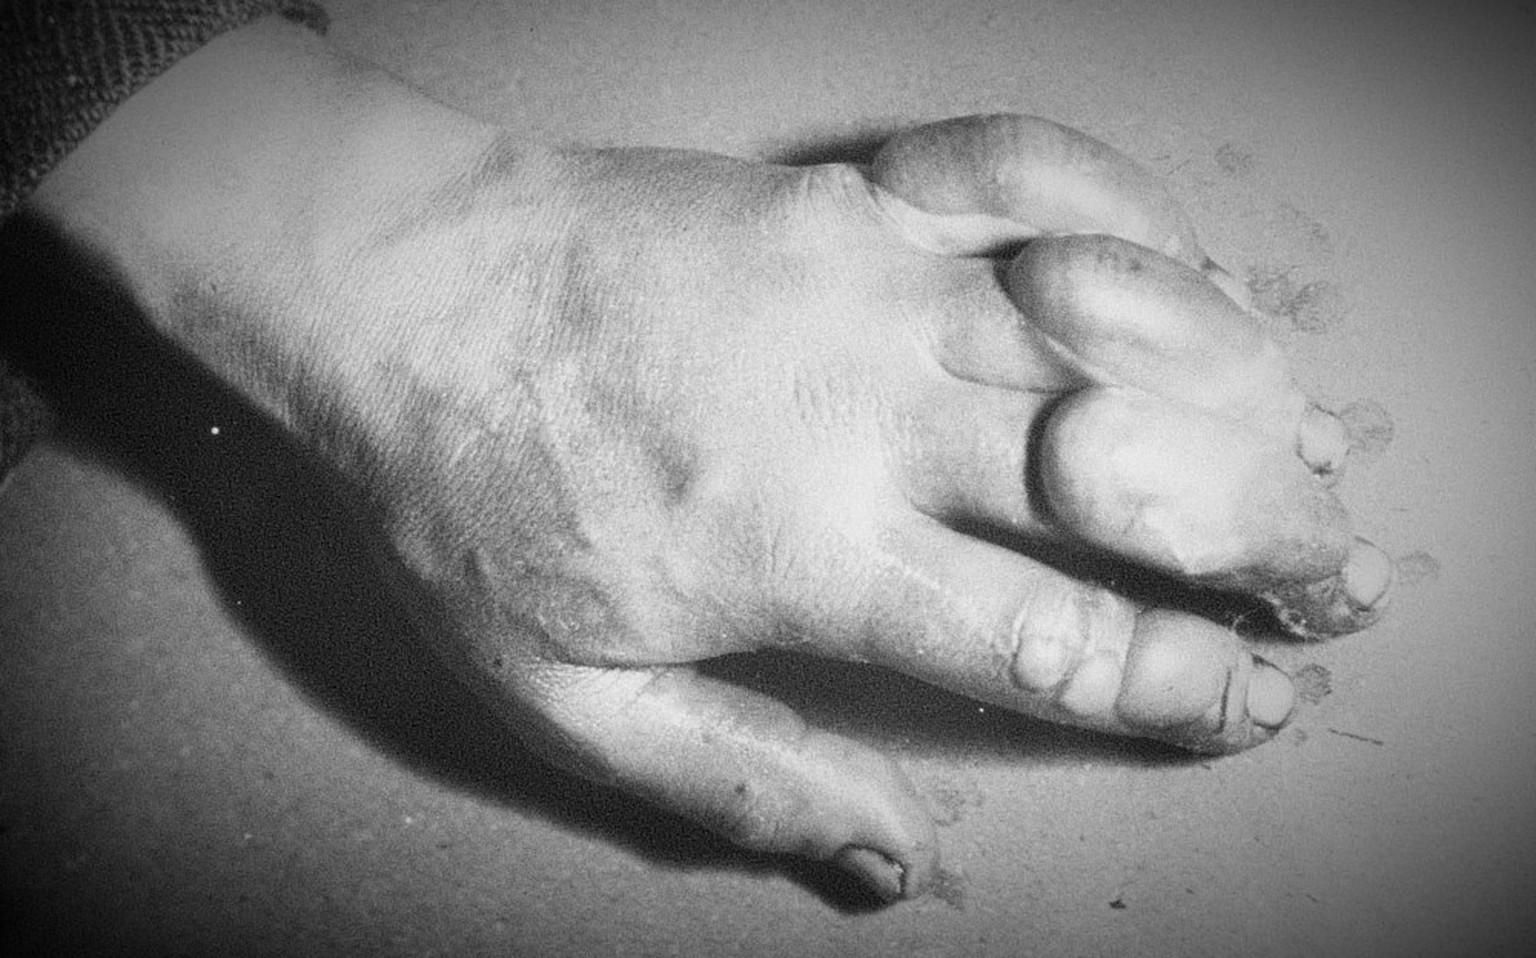 «Atkinsons Hand ist heute furchtbar schlimm, die Finger mit den Frostbeulen sehen aus wie Würste», schreibt Scott am 5. Juli 1911.